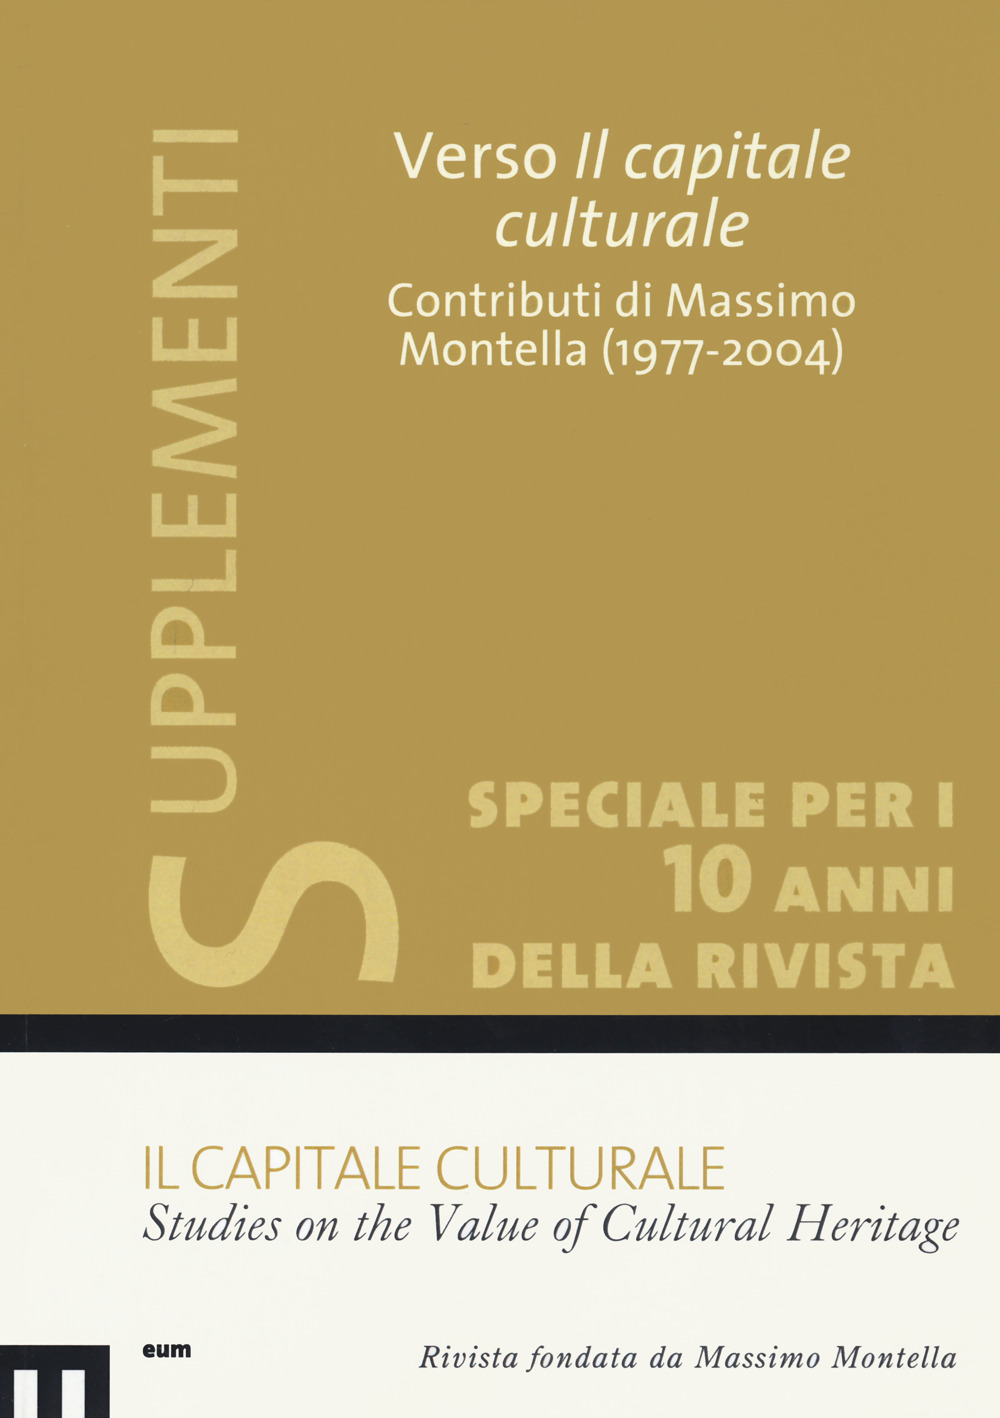 Il capitale culturale: Studies on the value of cultural heritage (2020). Vol. 1: Verso il capitale culturale. Contributi di Massimo Montella (1977-2004)